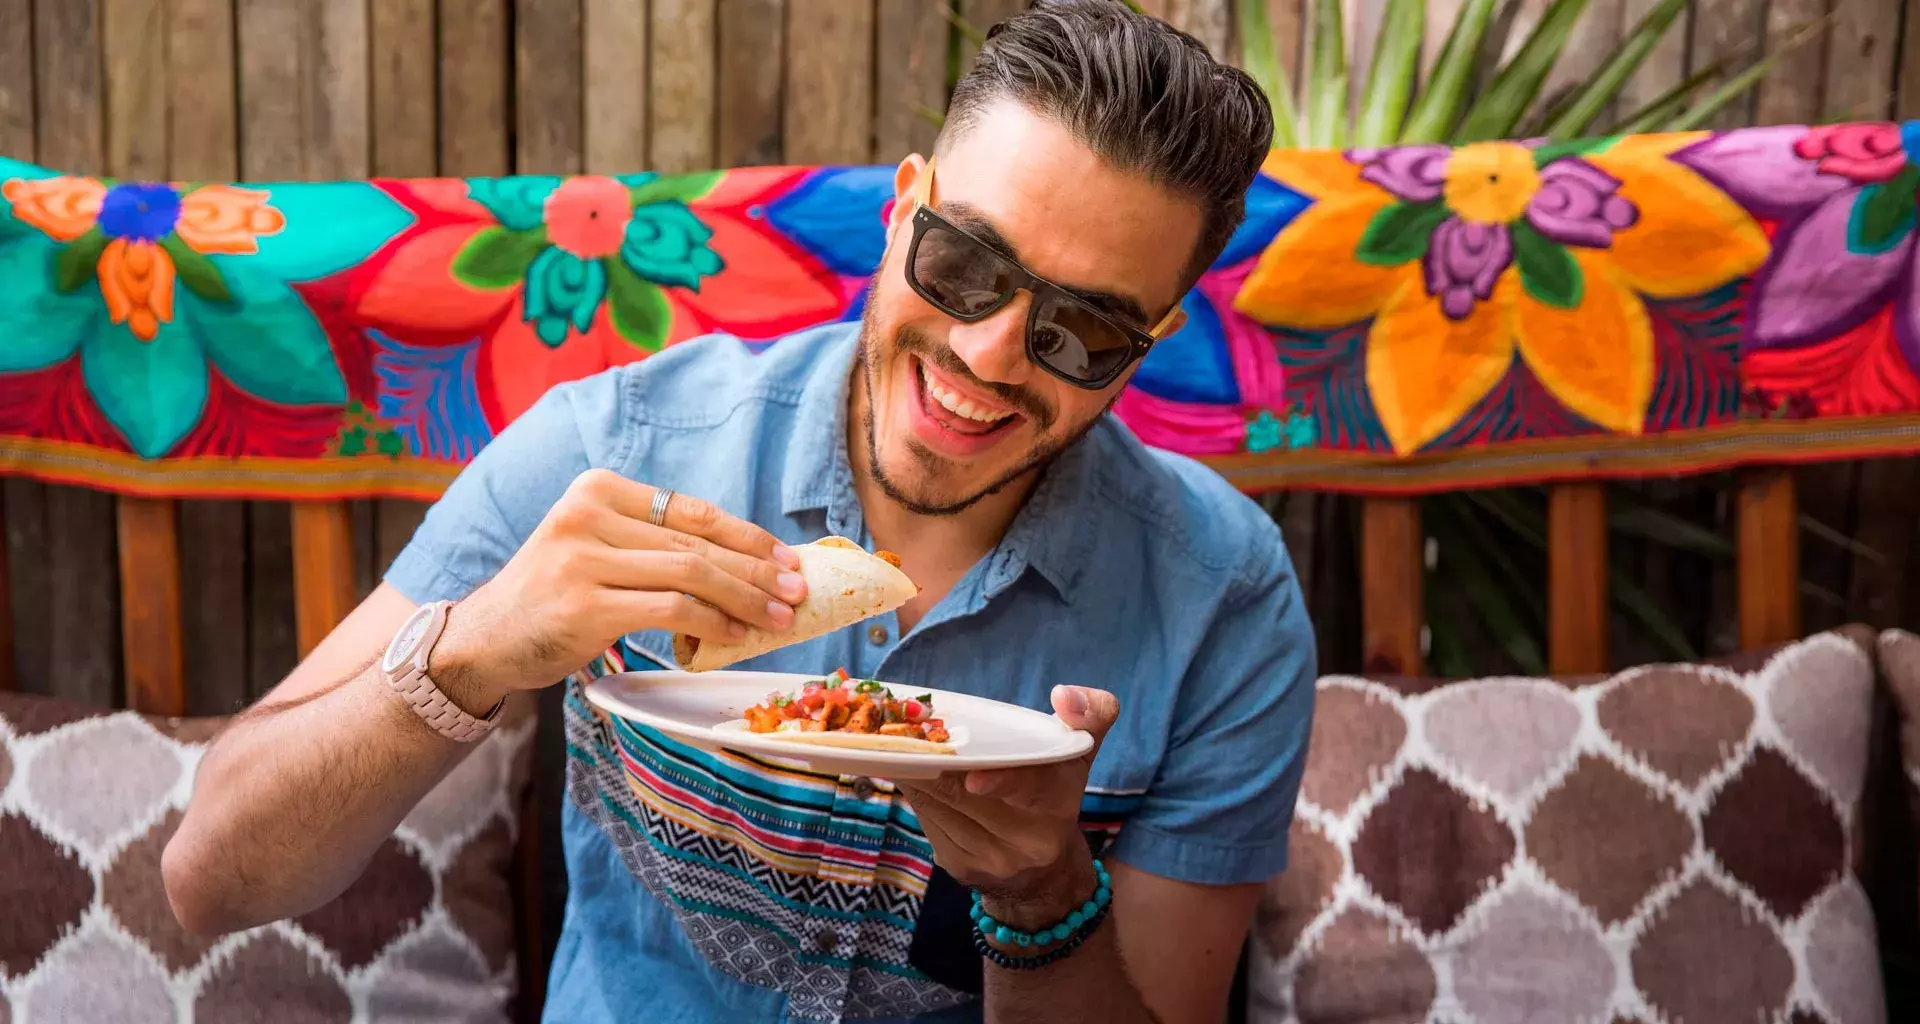 Celebra una noche mexicana saludable con estos tips